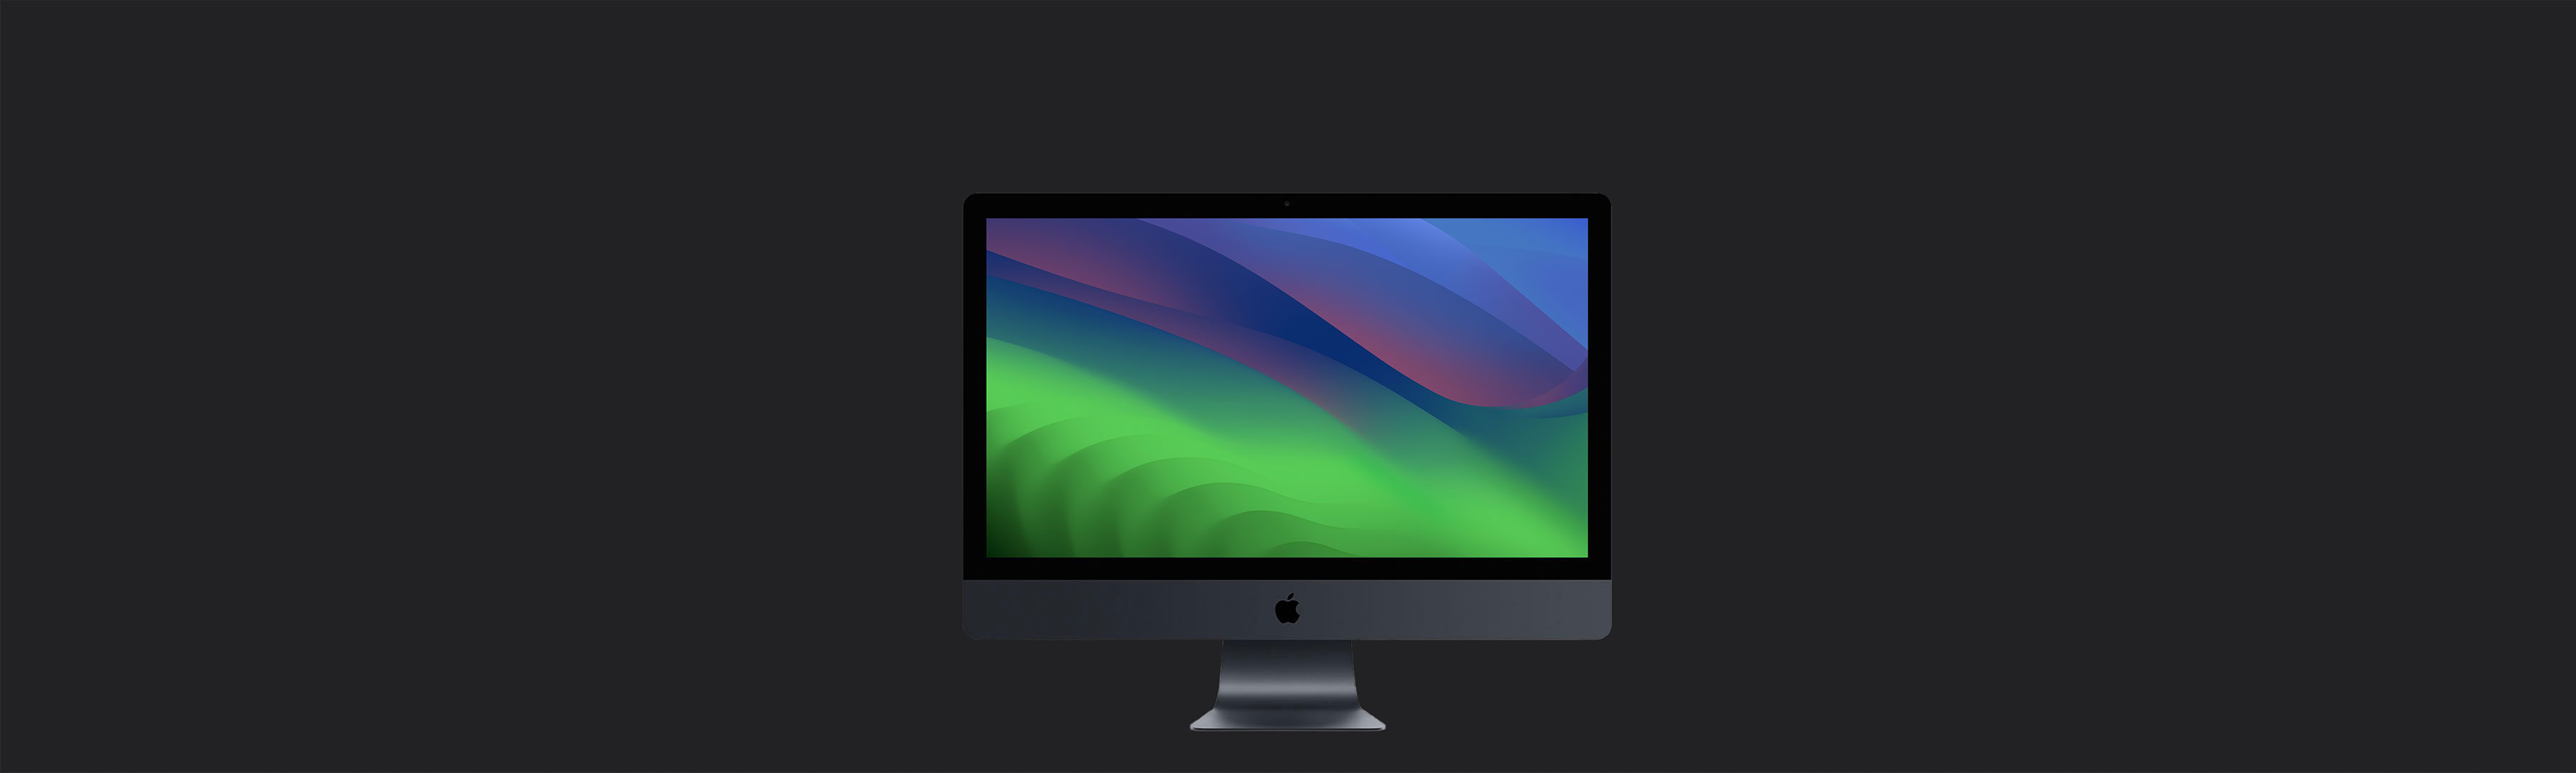 iMac Pro - Supporto Apple ufficiale